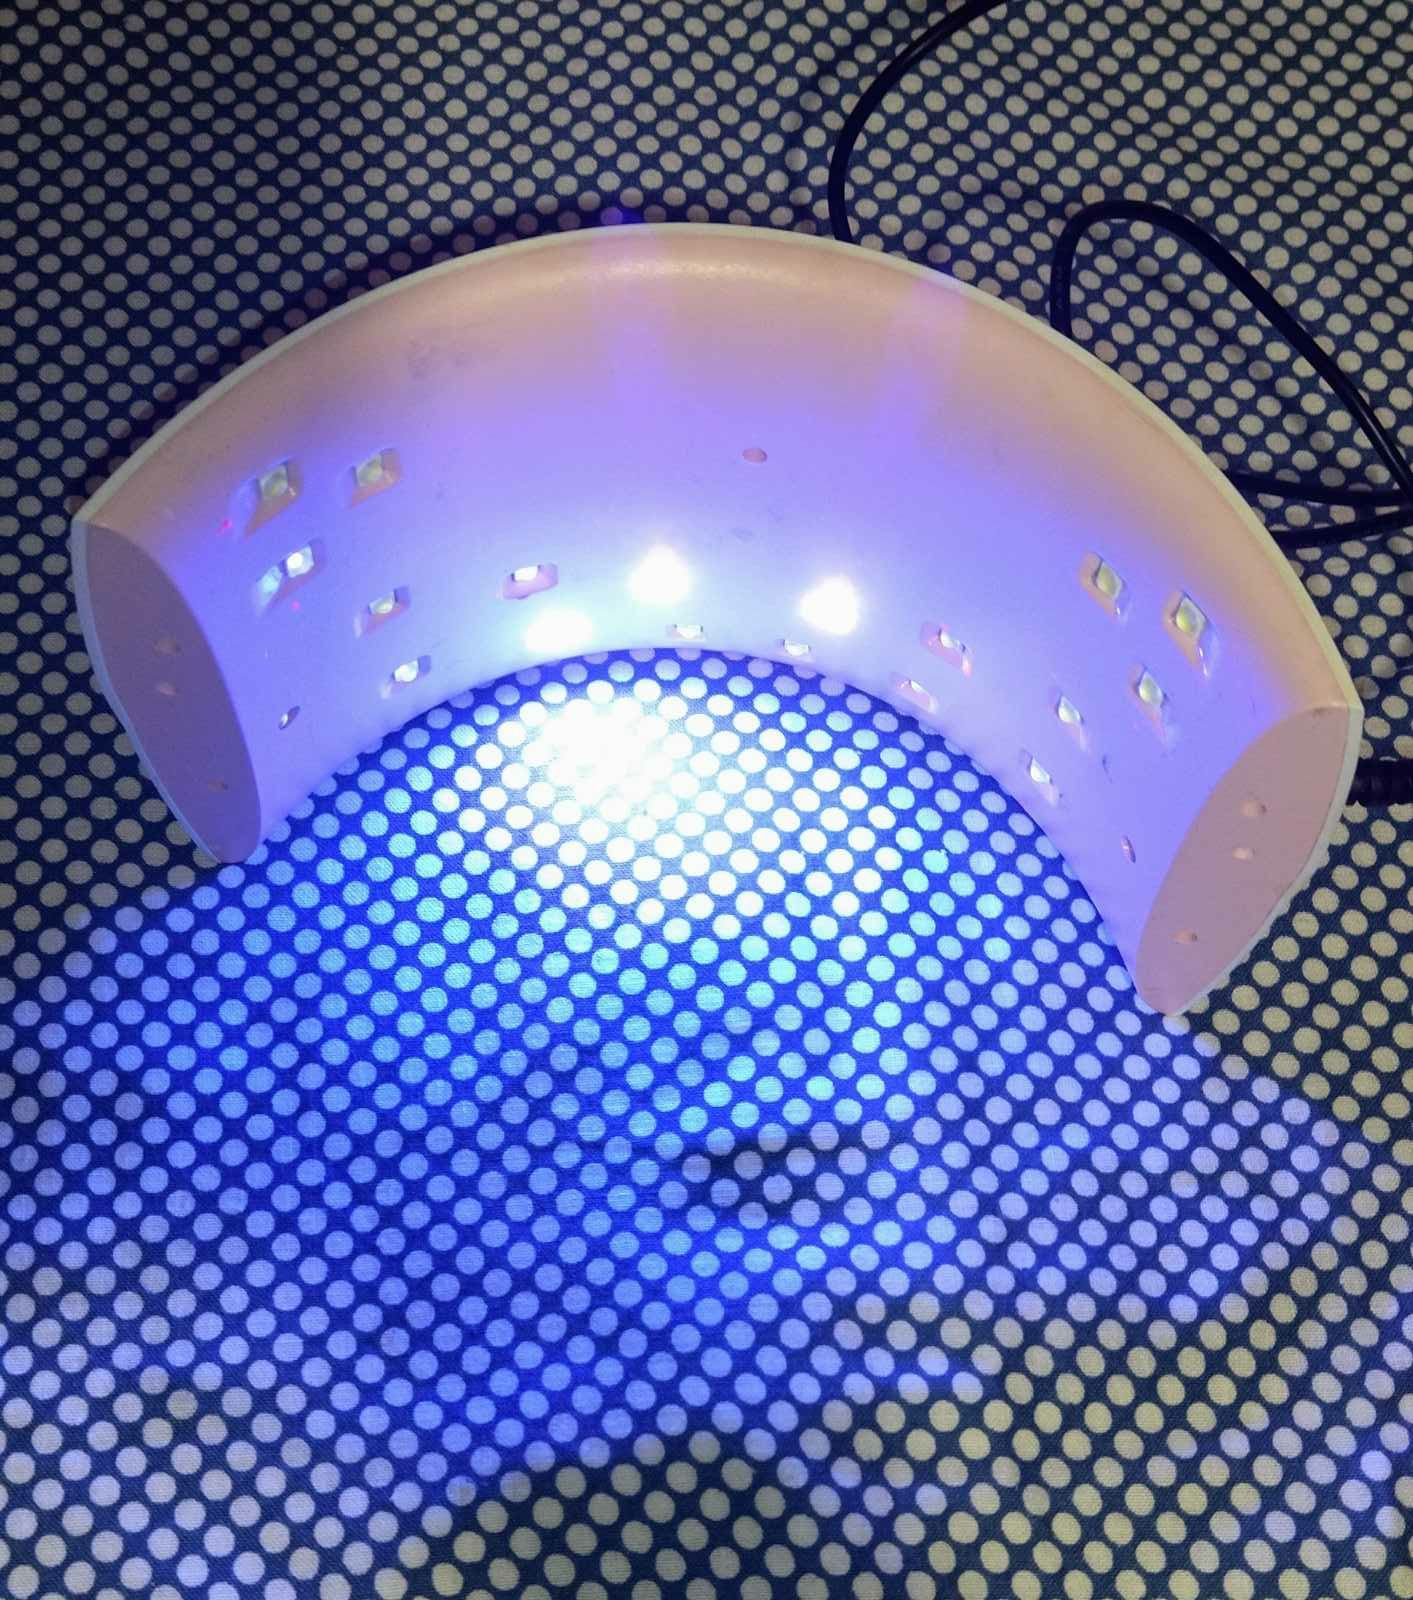 Лампа для сушки ногтей UV-LED SUN 9 C 36 W.. Нужен ремонт.